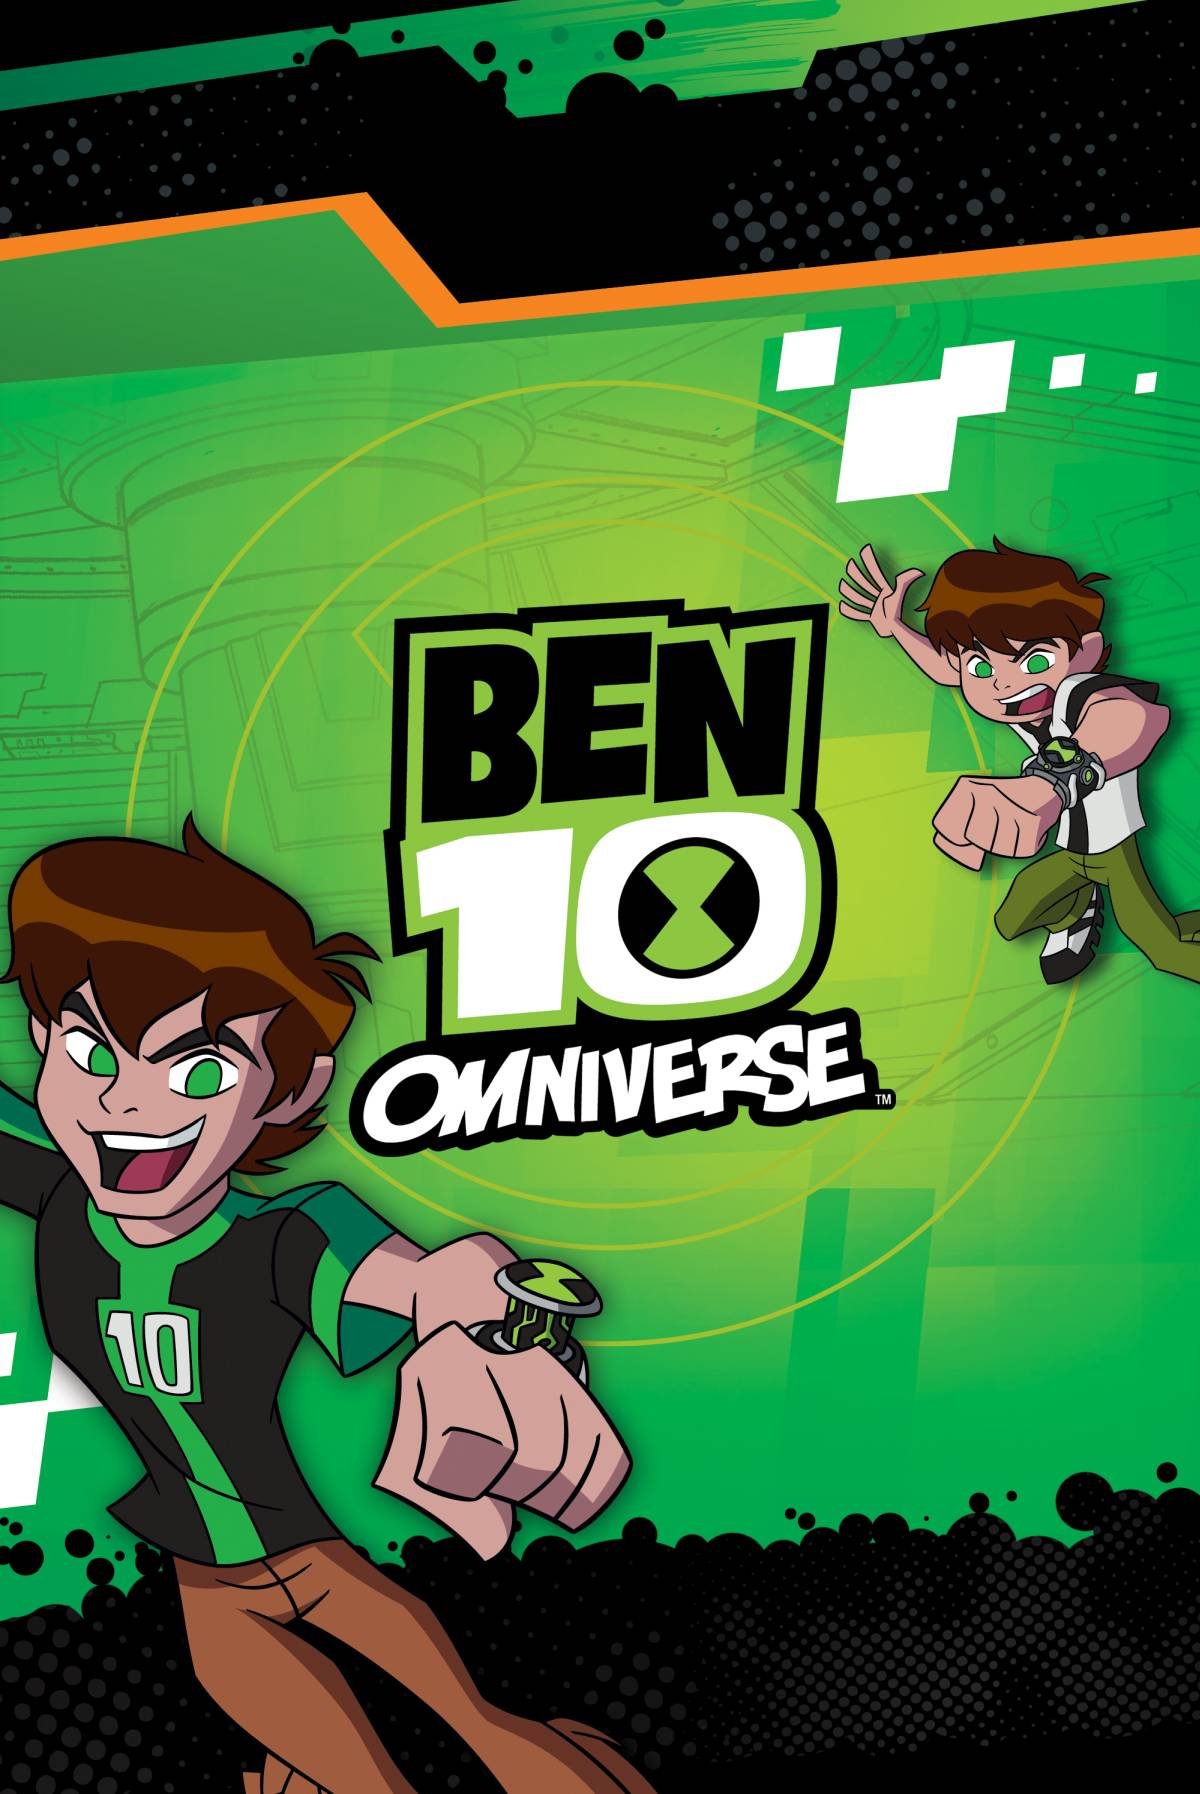 Now Player - Ben 10: Omniverse (Full Ver) S1